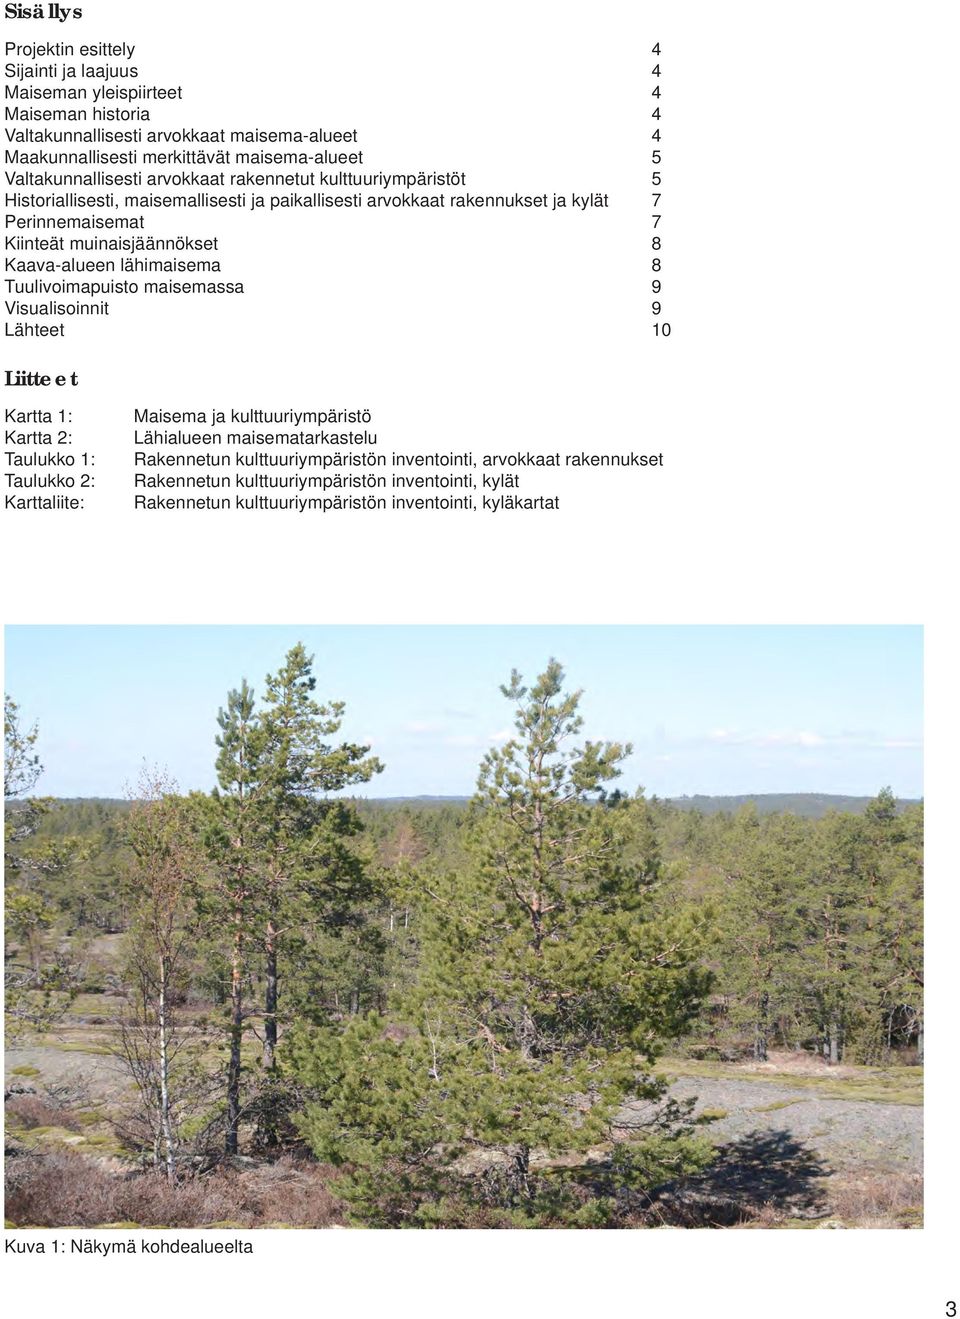 Kaava-alueen lähimaisema 8 Tuulivoimapuisto maisemassa 9 Visualisoinnit 9 Lähteet 10 Liitteet Kartta 1: Kartta 2: Taulukko 1: Taulukko 2: Karttaliite: Maisema ja kulttuuriympäristö Lähialueen